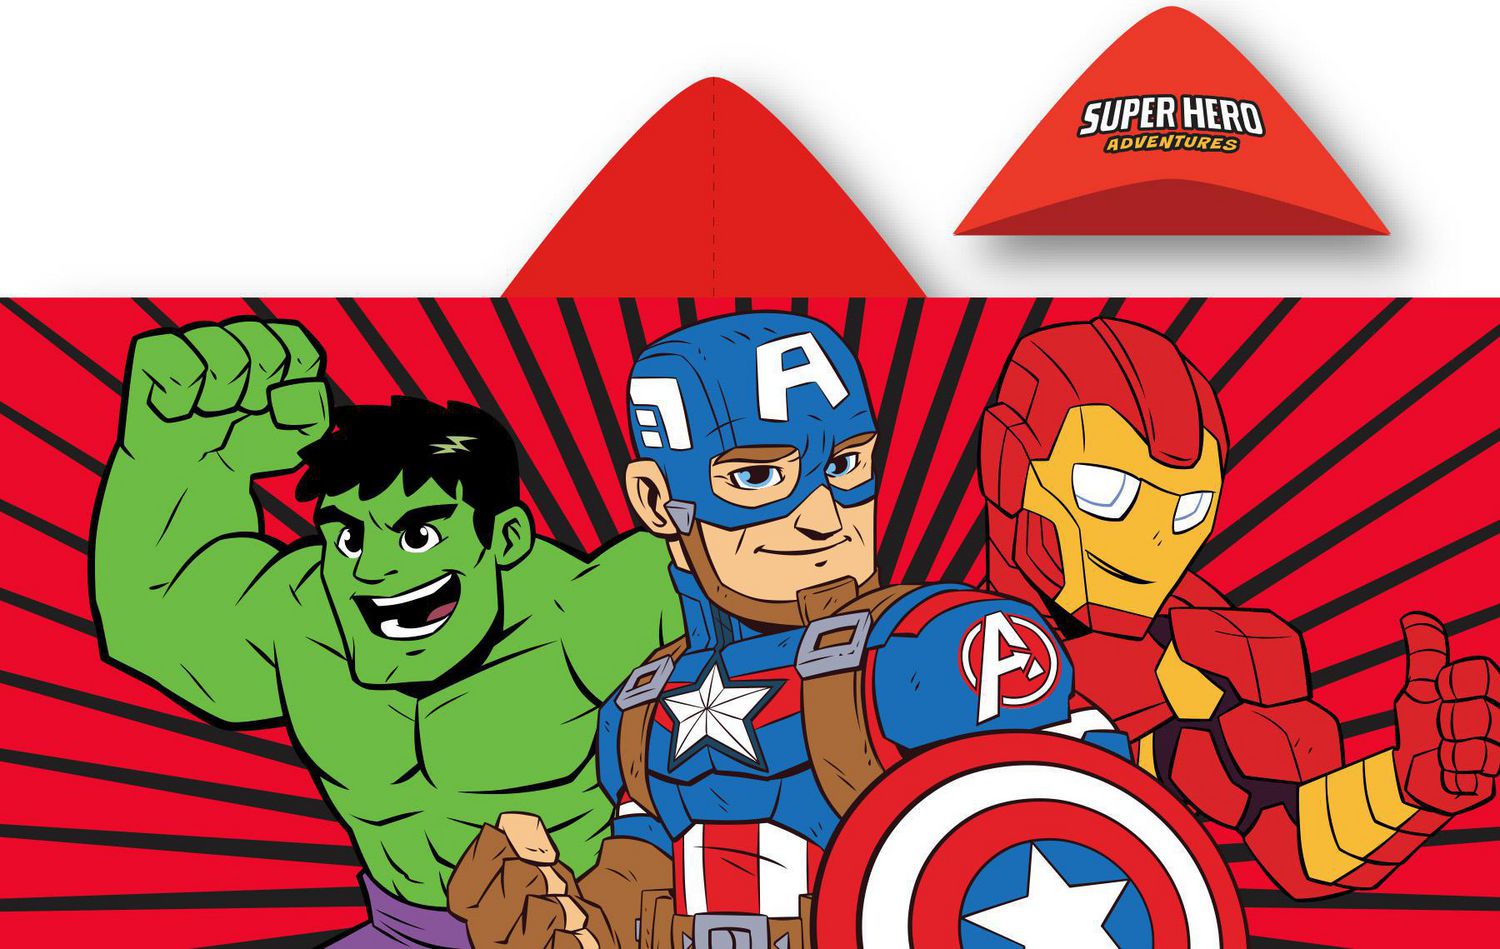 Marvel Avengers Hooded Towel  23"×51"  Captain America Hulk Ironman 